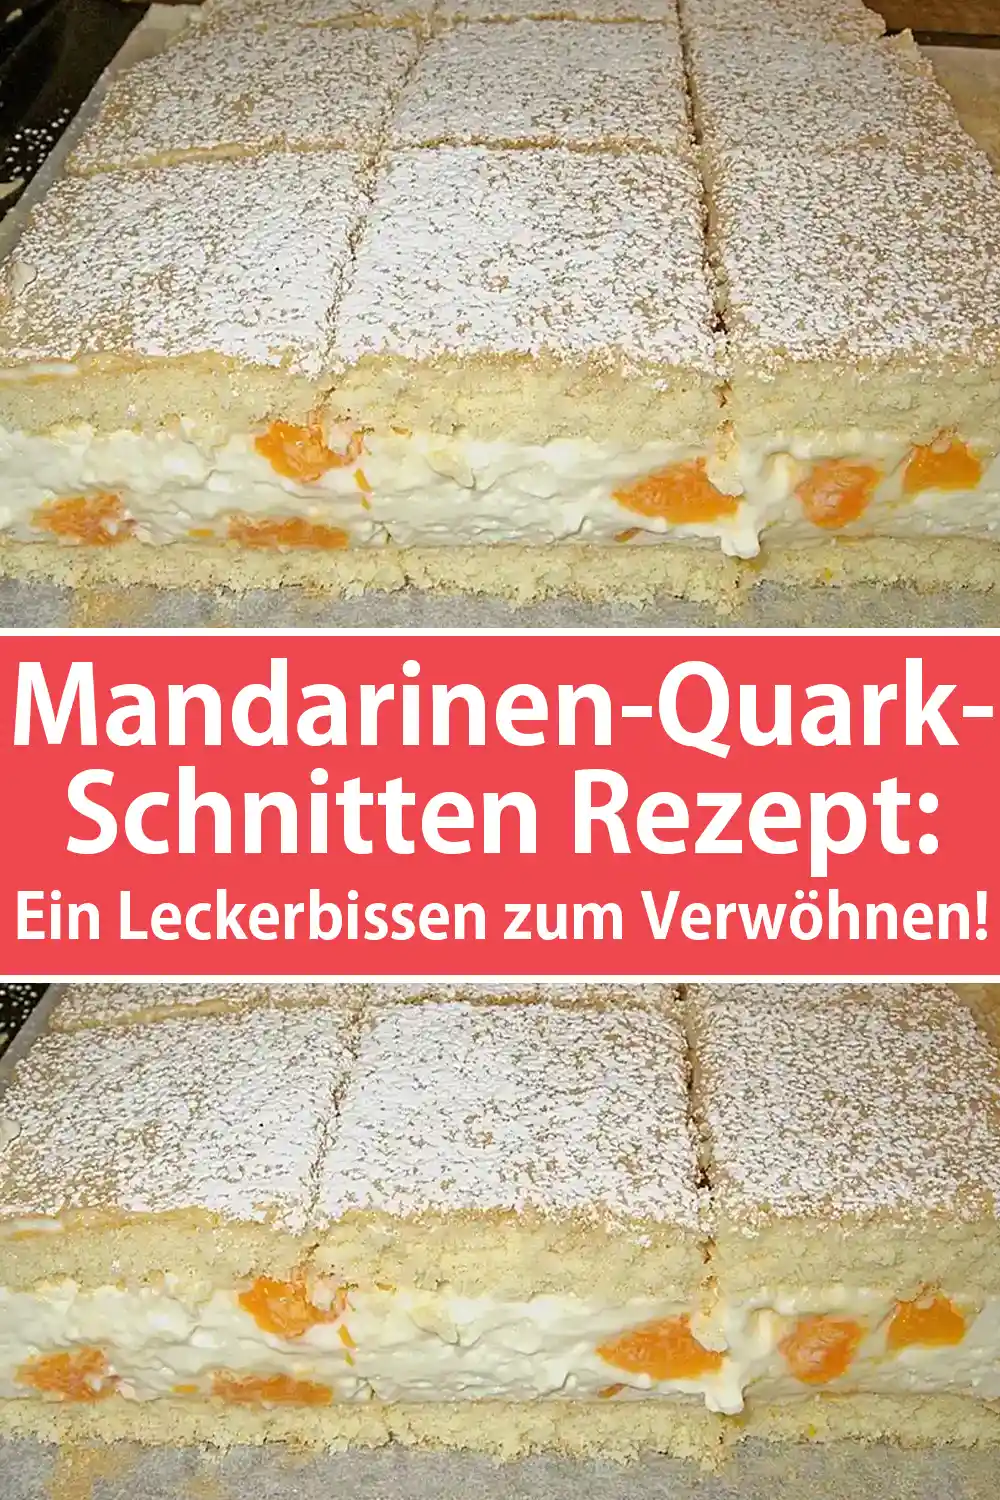 Mandarinen-Quark-Schnitten Rezept: Ein Leckerbissen zum Verwöhnen!